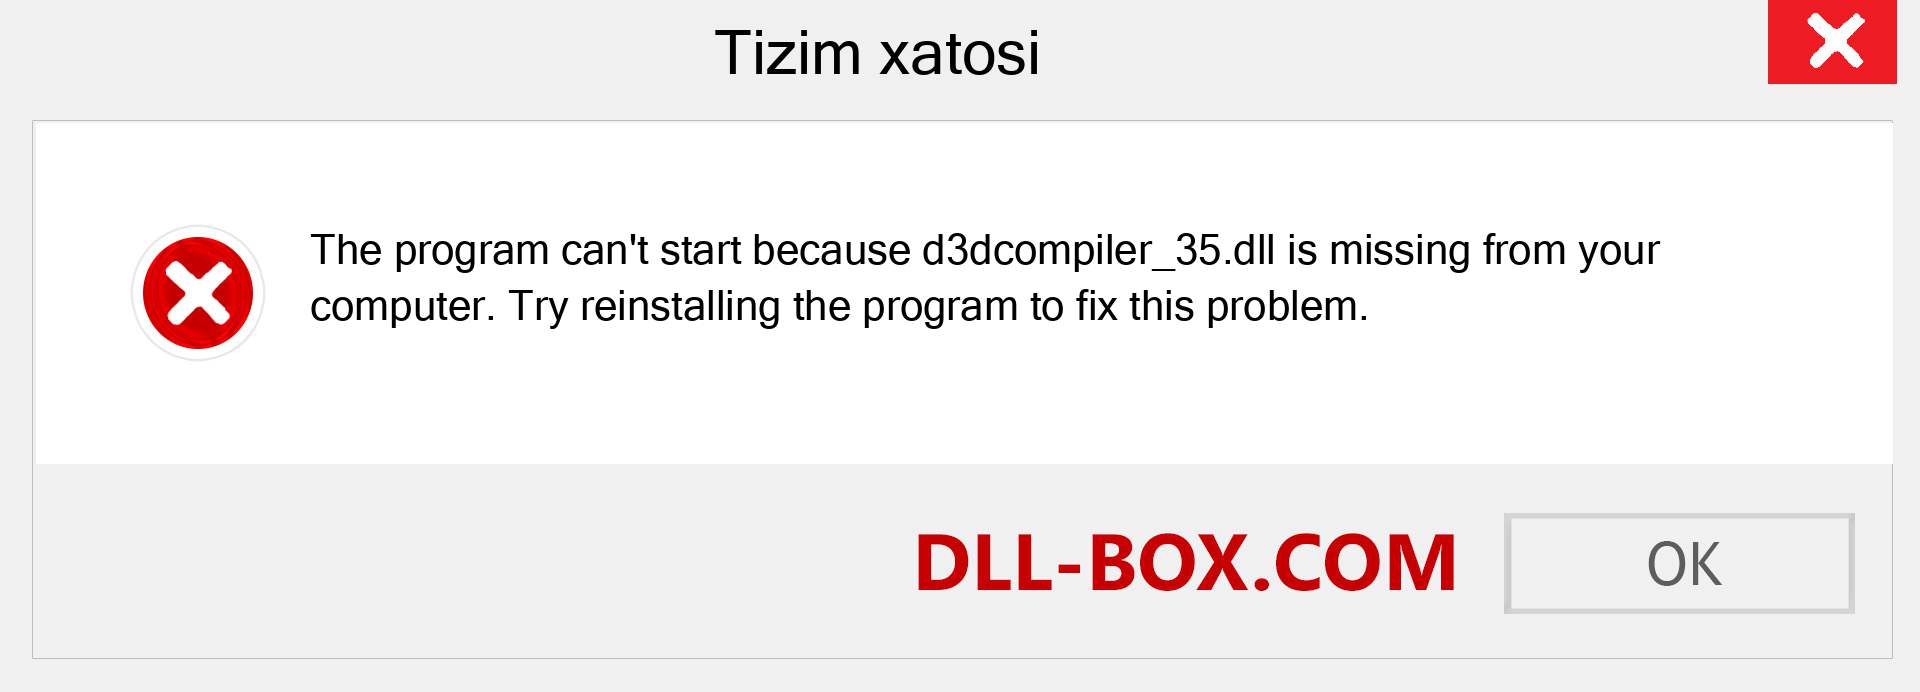 d3dcompiler_35.dll fayli yo'qolganmi?. Windows 7, 8, 10 uchun yuklab olish - Windowsda d3dcompiler_35 dll etishmayotgan xatoni tuzating, rasmlar, rasmlar